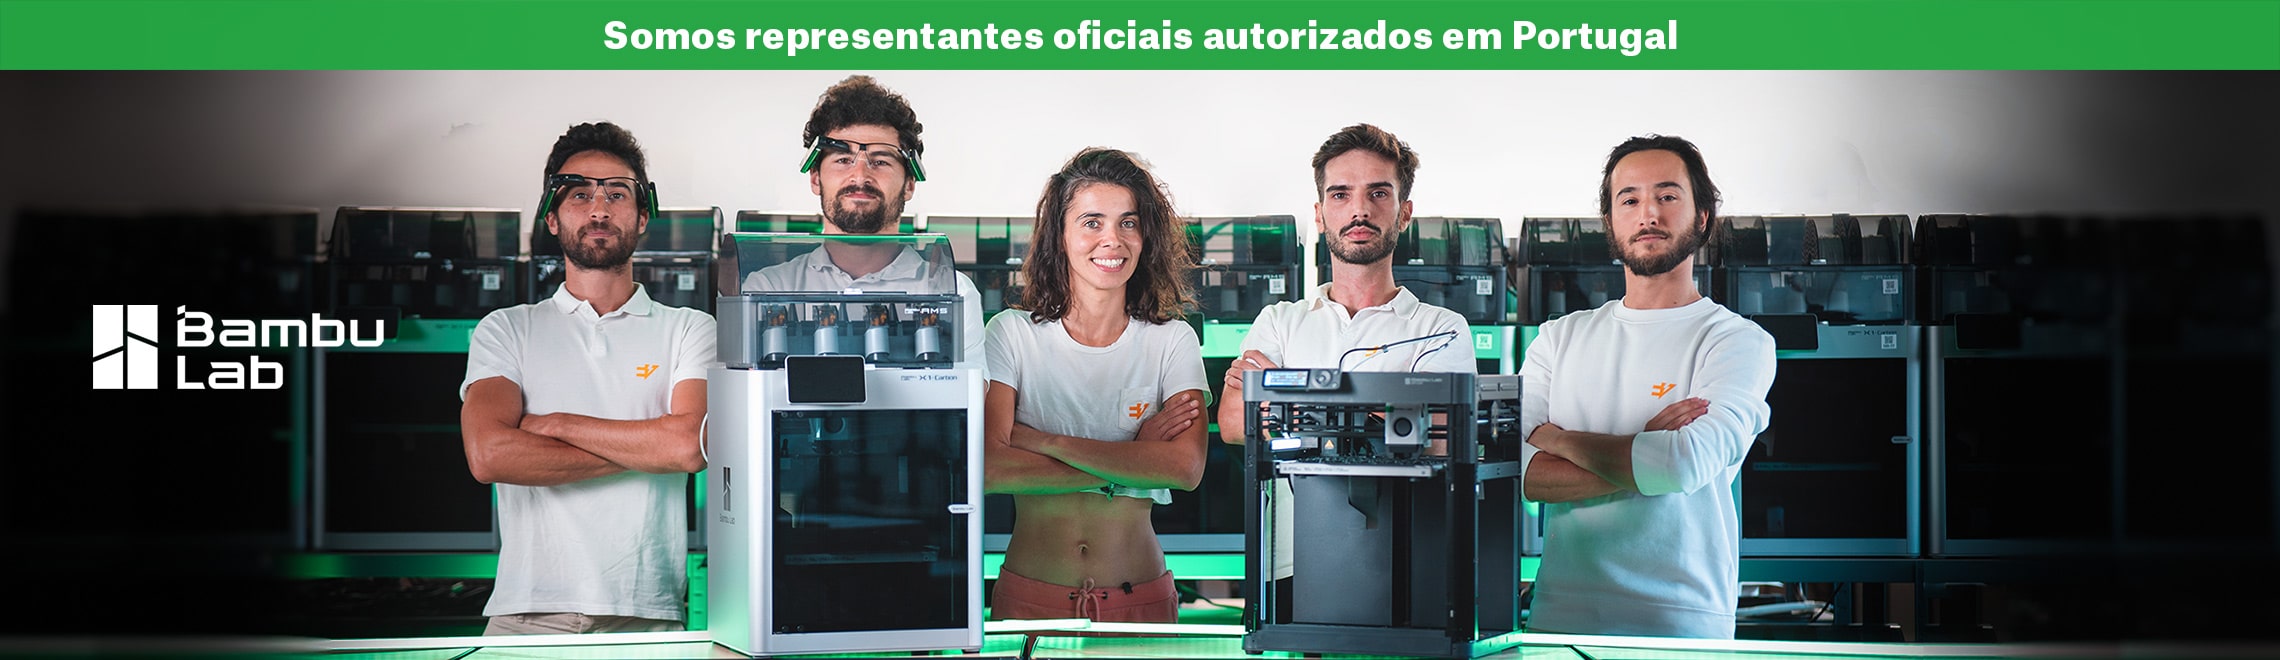 bambu lab marca de impressao 3d em portugal - representantes oficiais